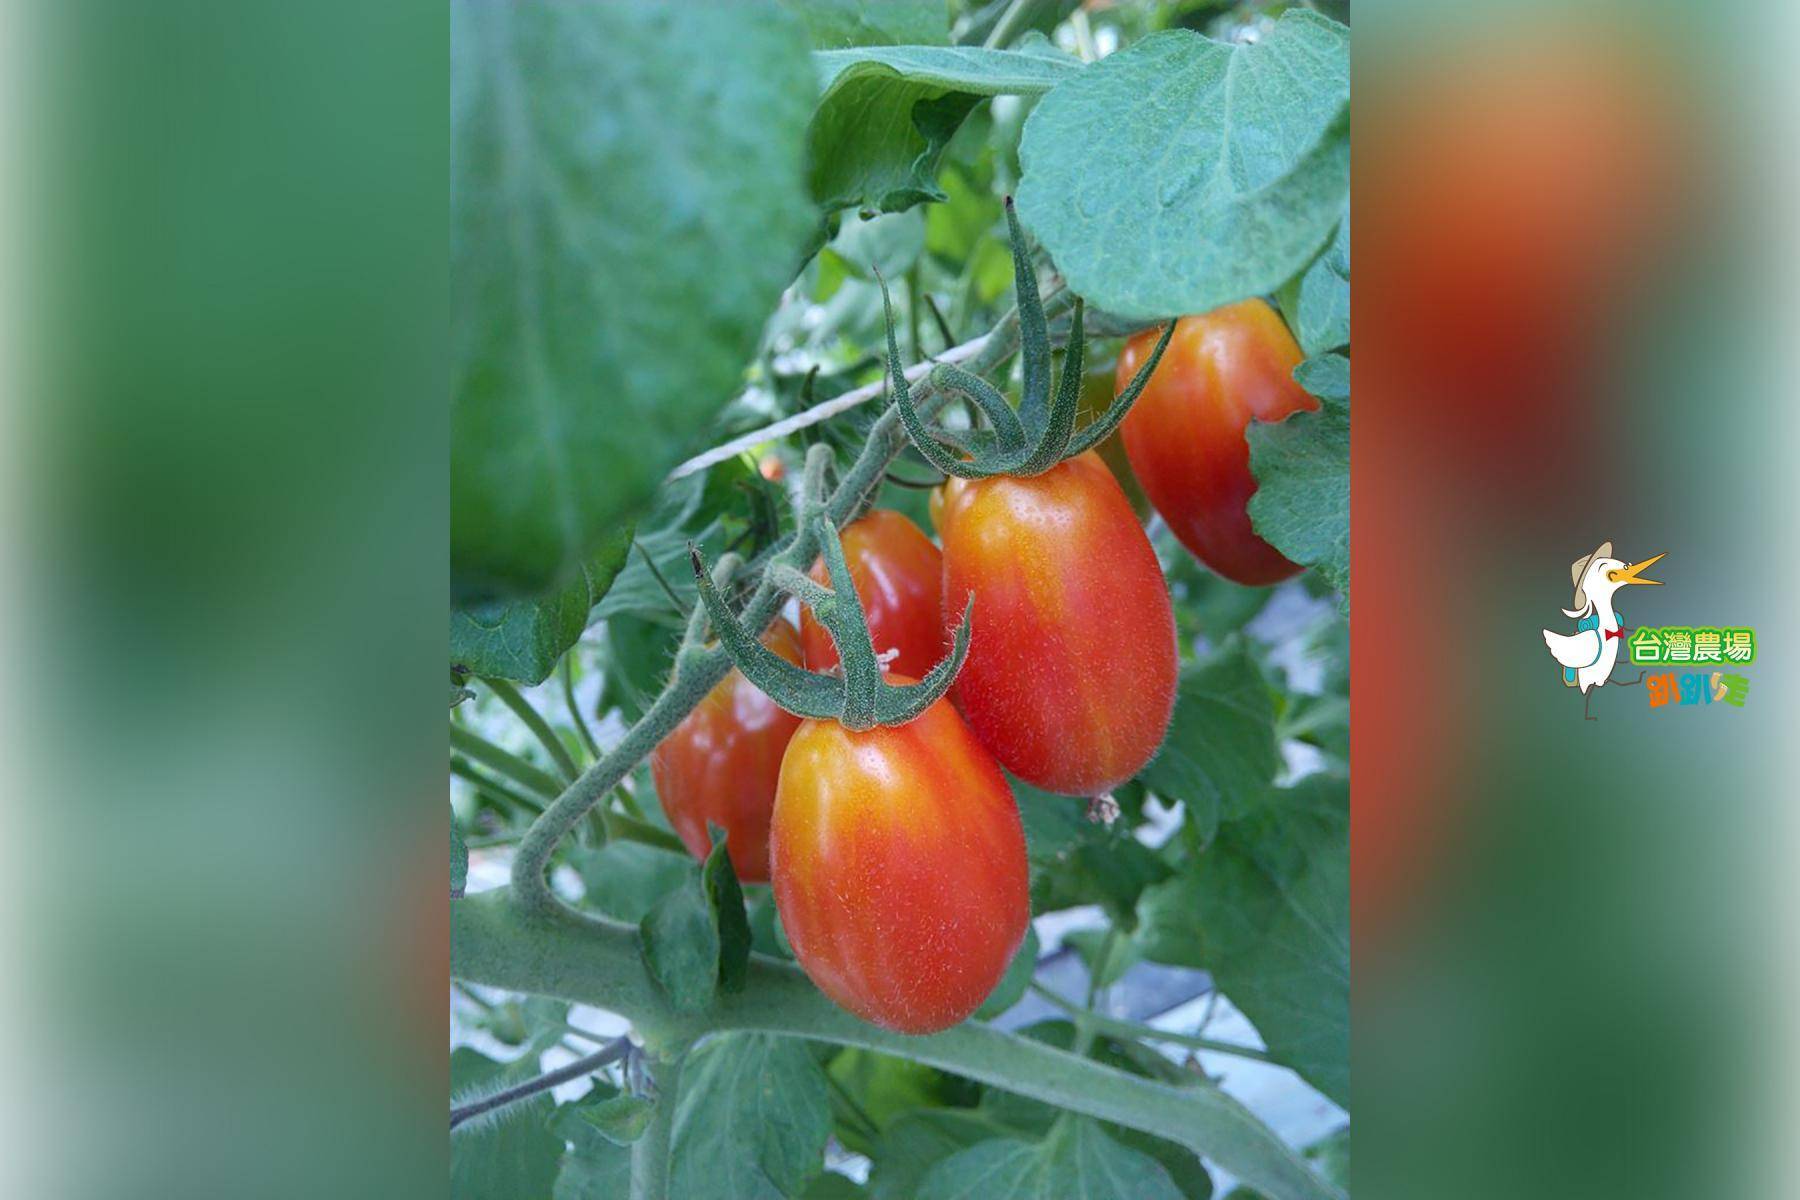 宜蘭-藤結教育農場-採果(番茄)體驗券6